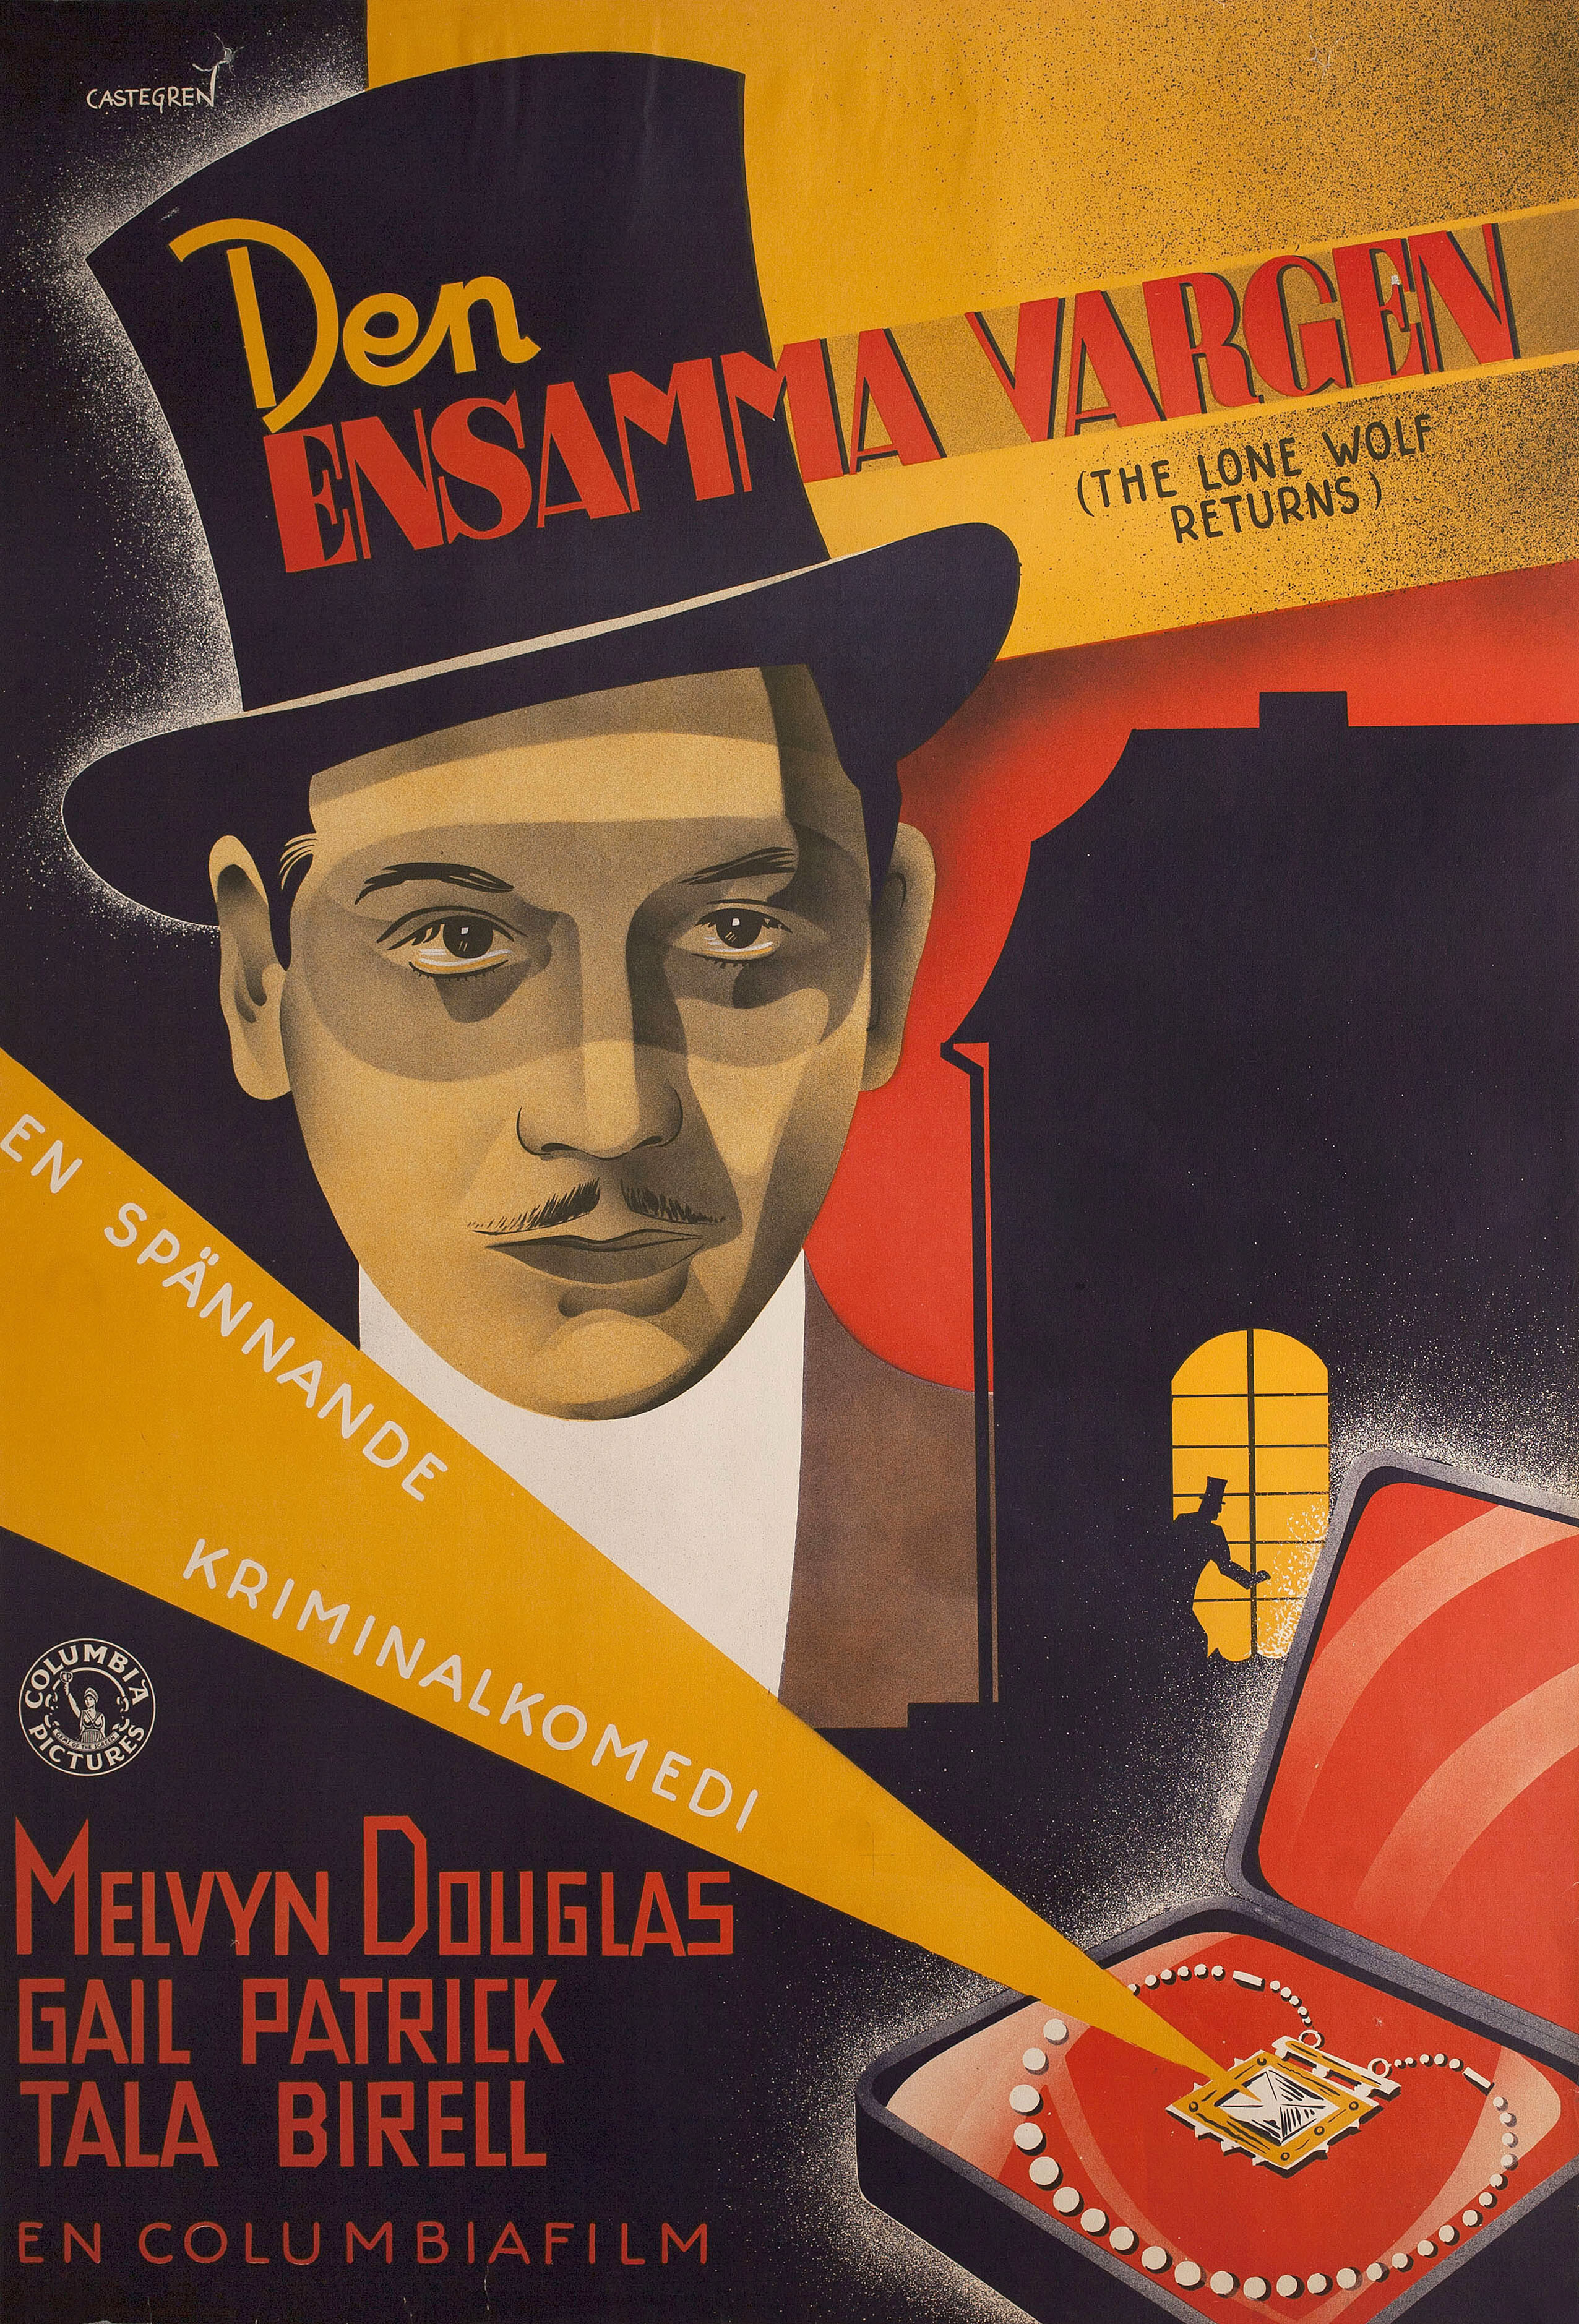 Возвращение одинокого волка (The Lone Wolf Returns, 1935), режиссёр Рой Уильям Нил, постер к фильму в стиле ар-деко (Швеция, 1936 год), автор Кастег